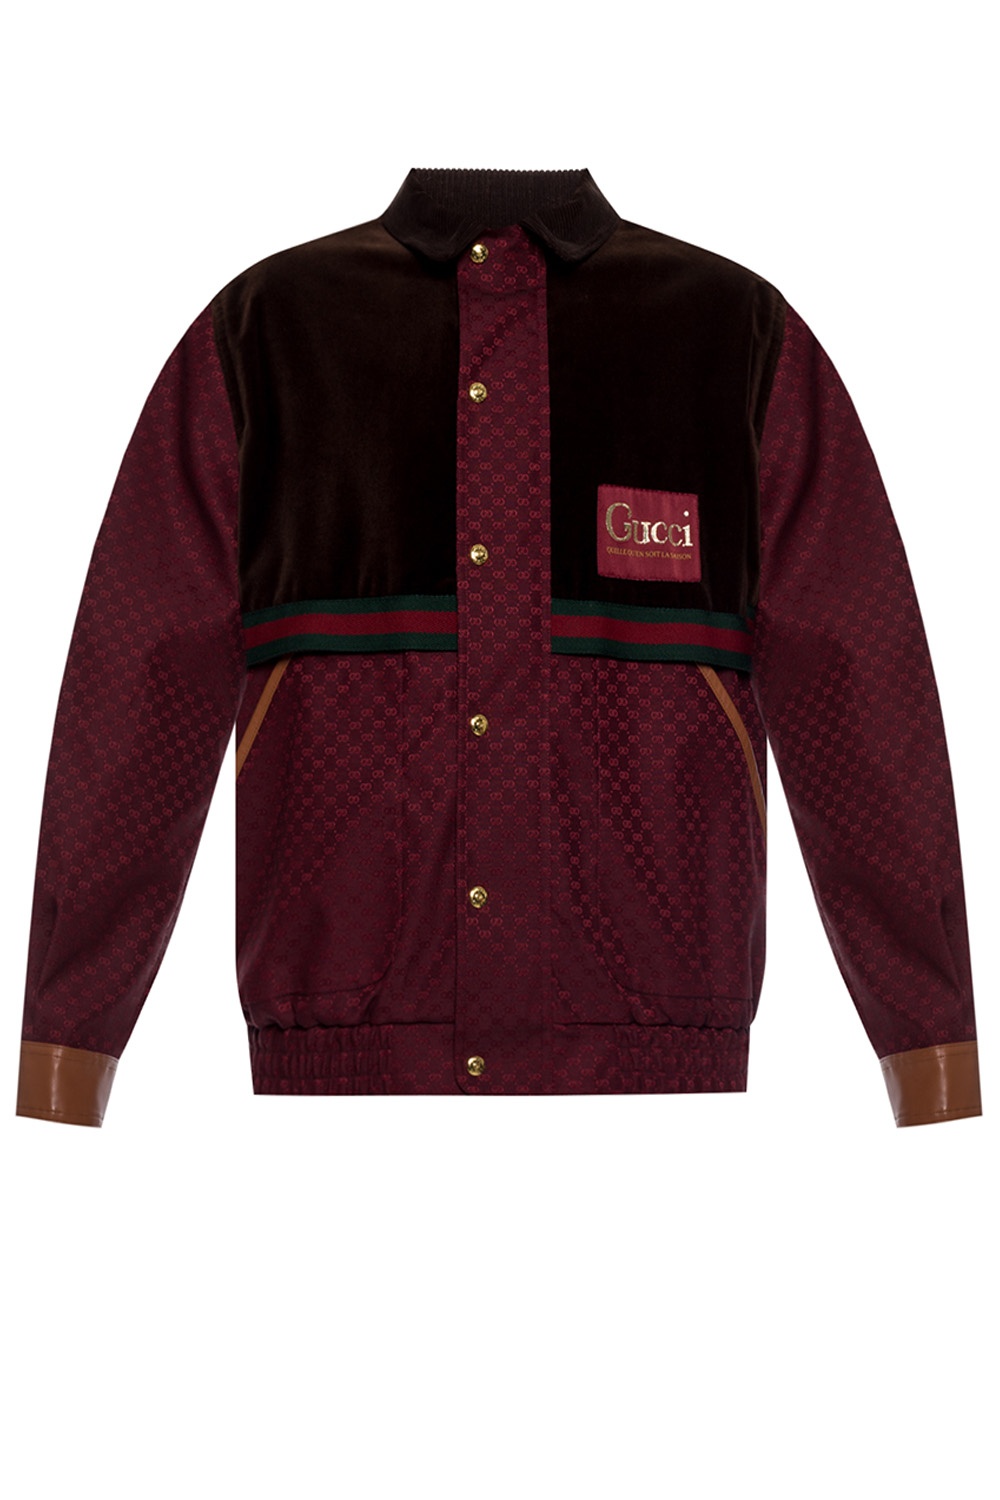 Gucci Maxi GG Fleece Jacket